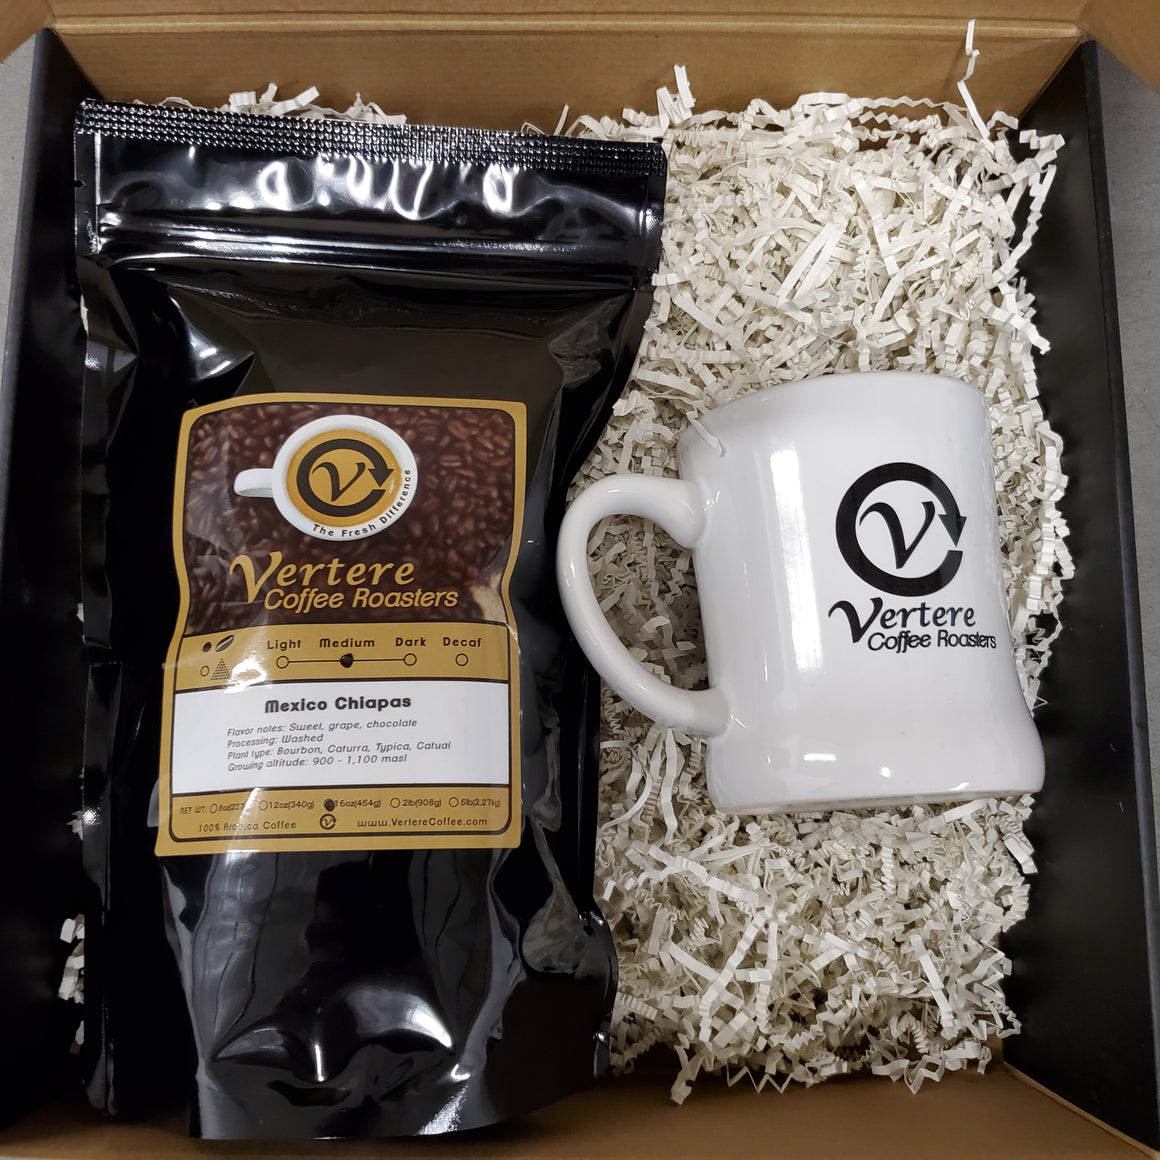 Gift: Vertere Coffee and Vertere Mug